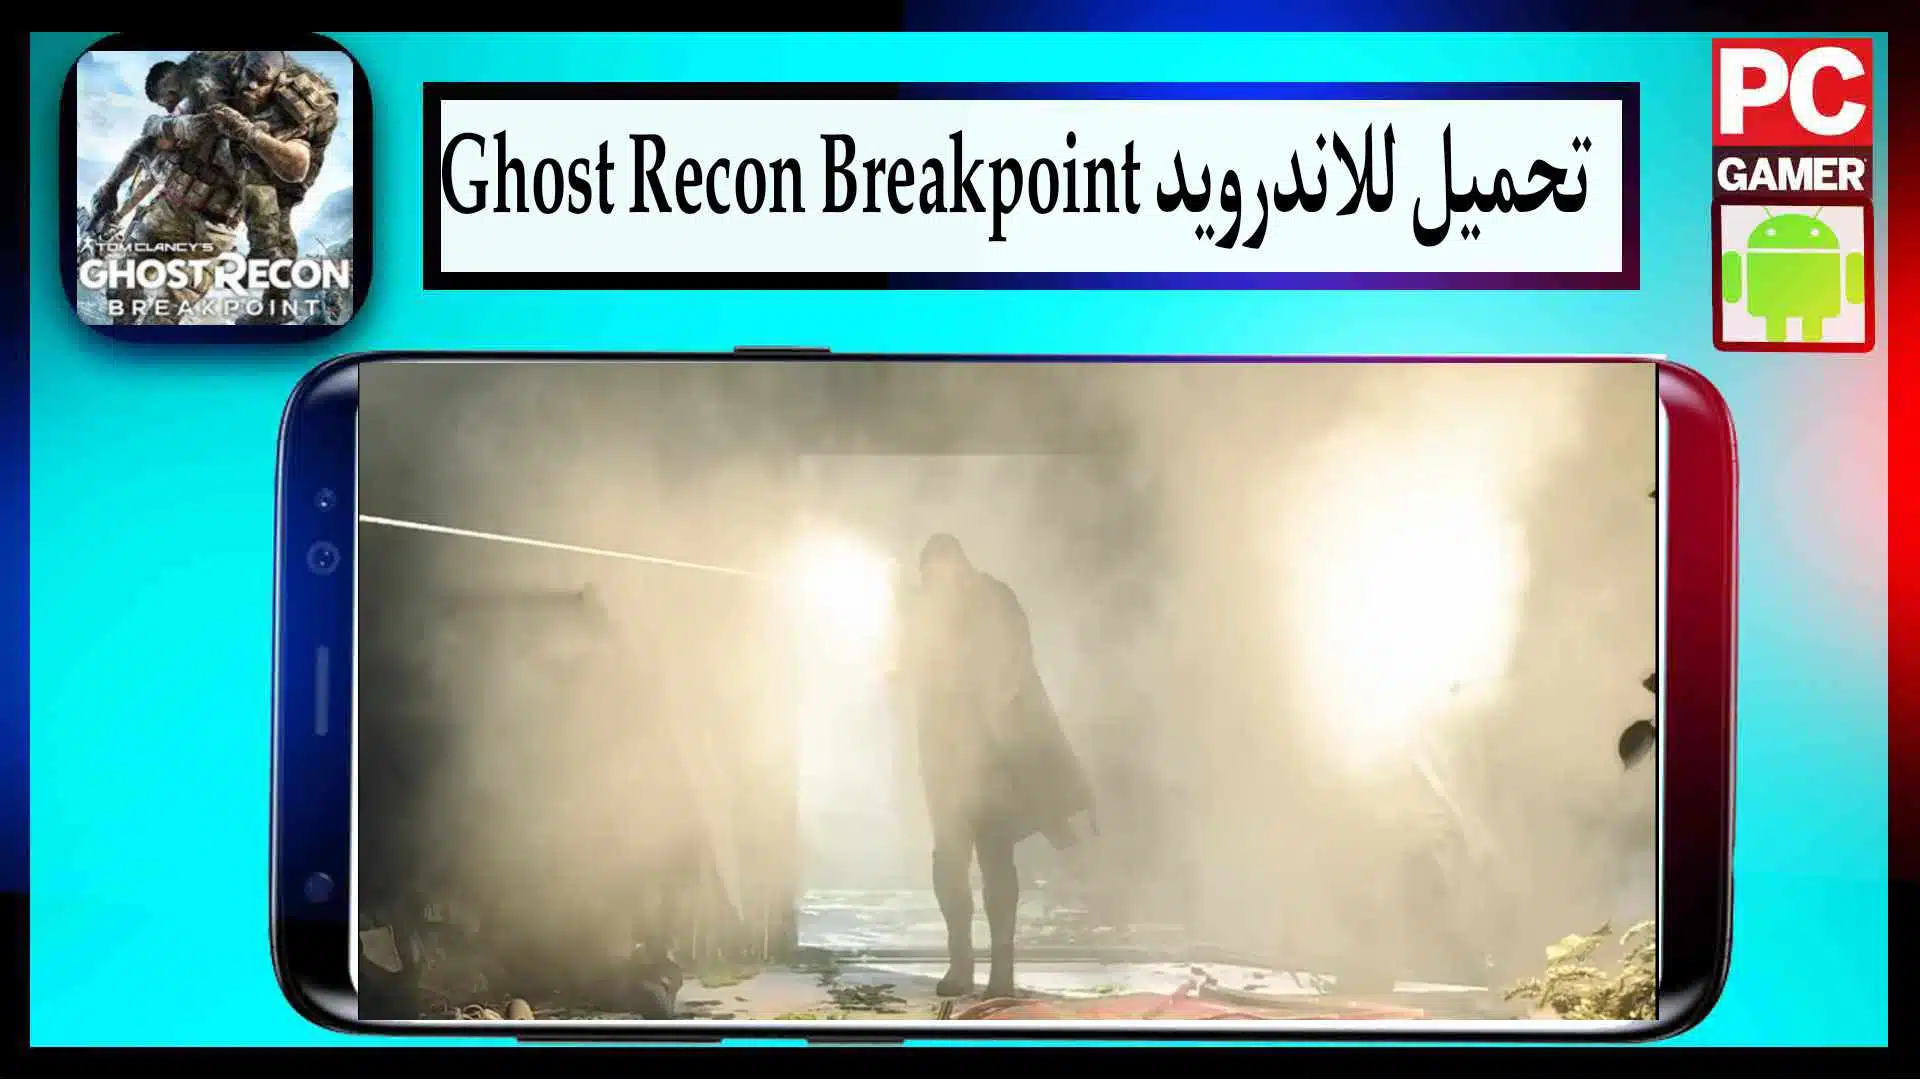 تحميل لعبة ghost recon breakpoint للكمبيوتر وللاندرويد من ميديا فاير 2